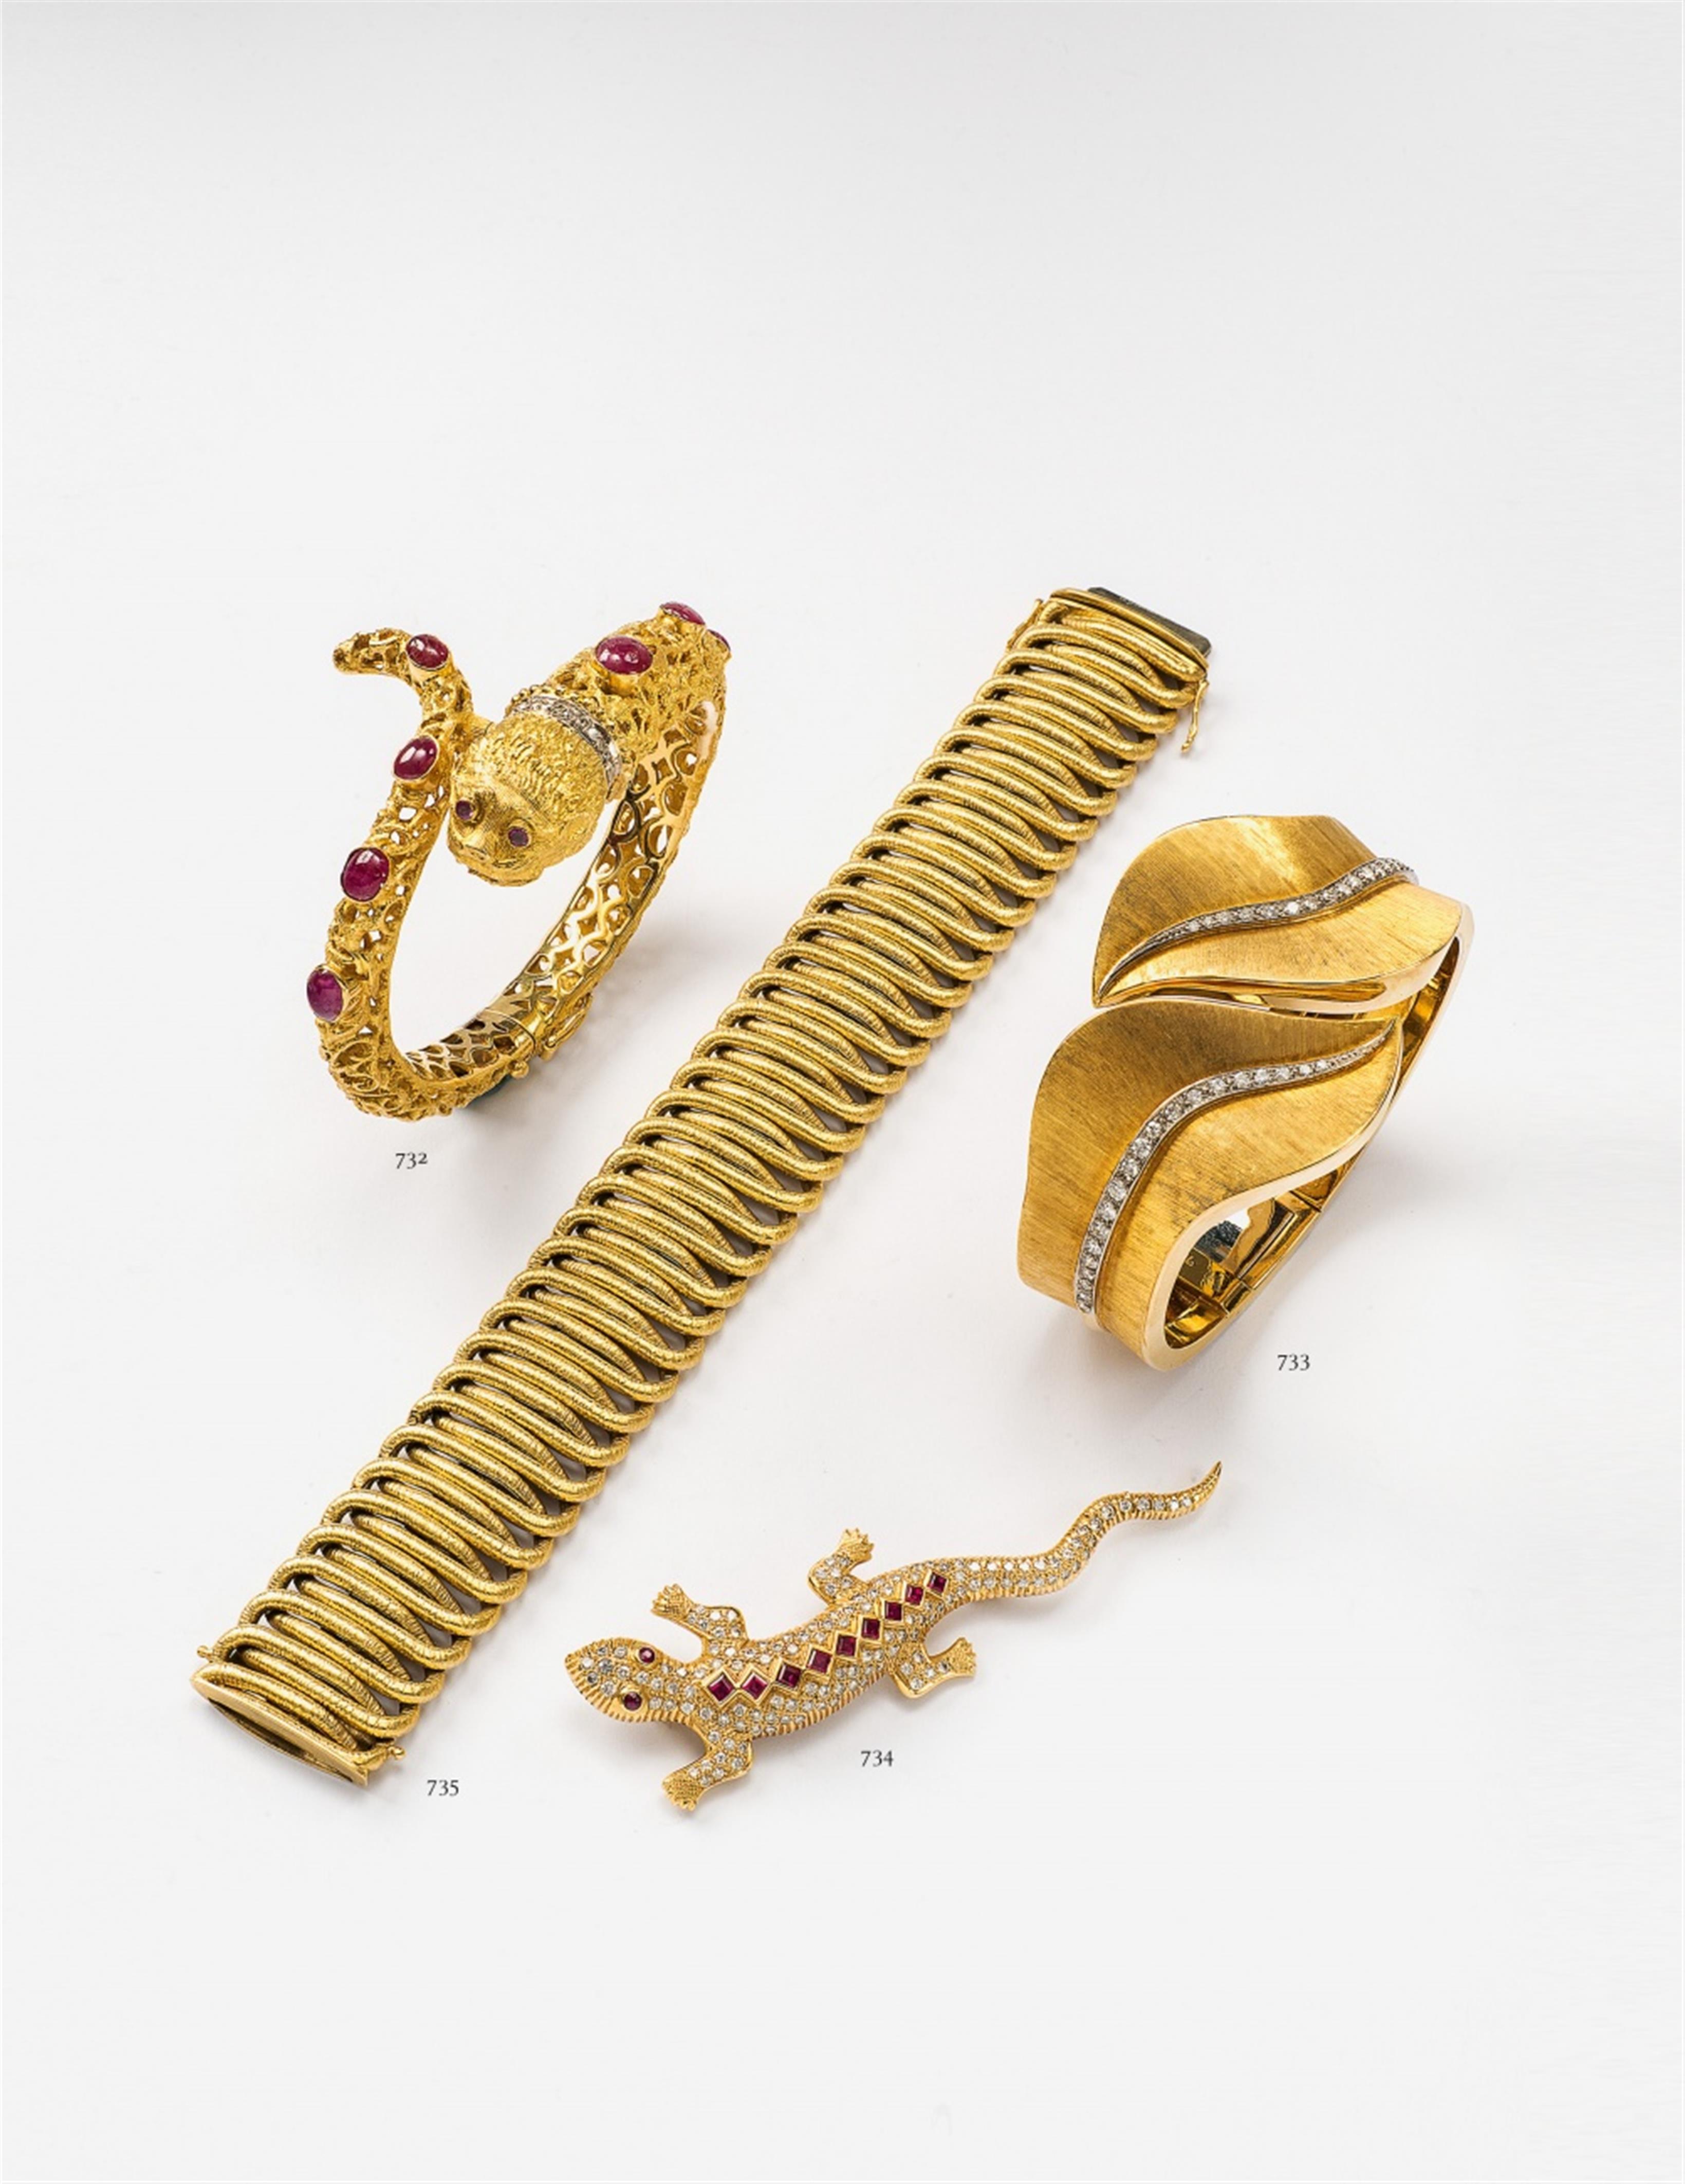 An 18k gold and diamond cuff bangle - image-3